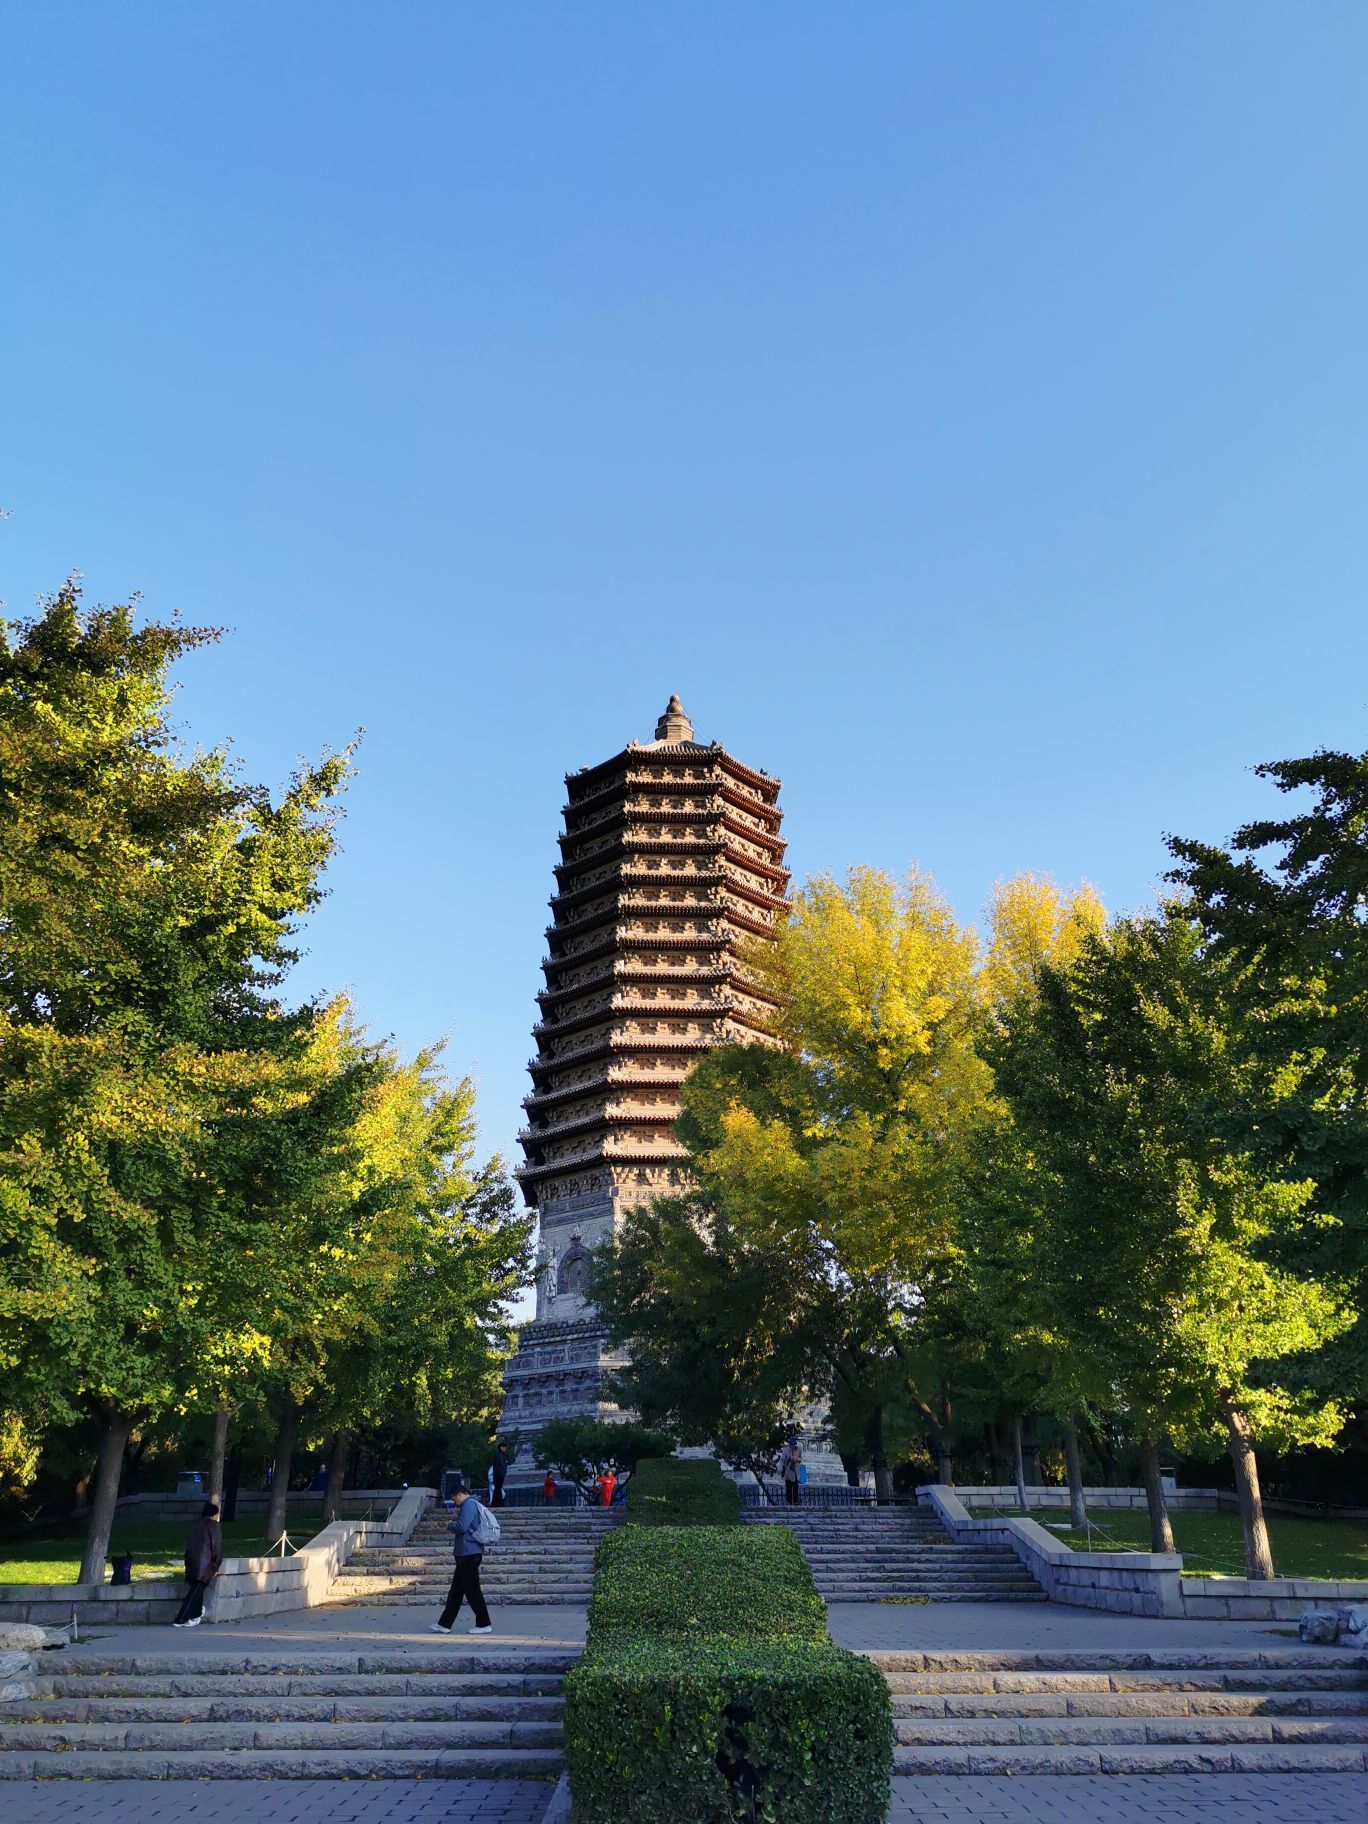 【携程攻略】北京玲珑塔(八里庄塔)景点,玲珑塔原名永安万寿塔,因为原